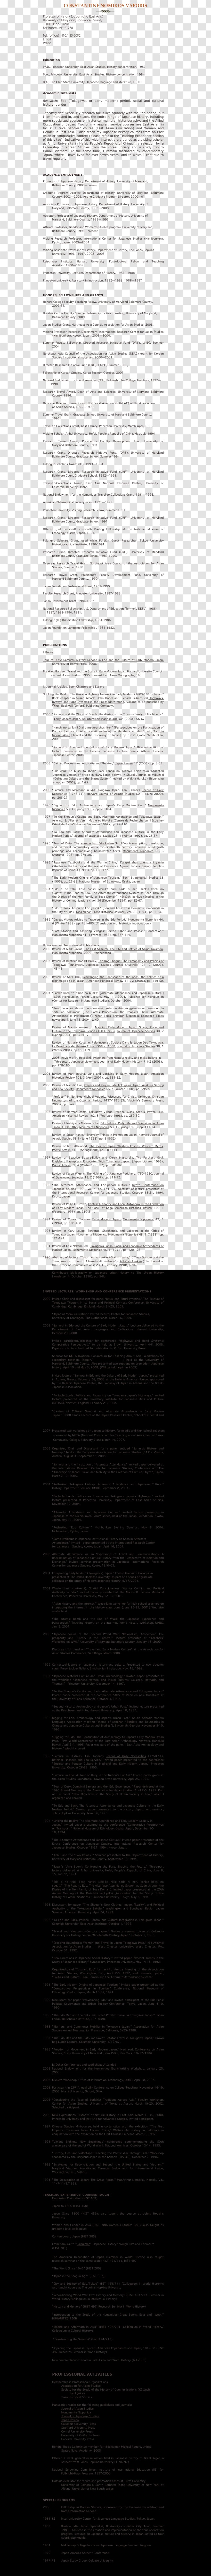 Единый государственный реестр прав на недвижимое имущество и сделок с ним Evidence Document November 28 Transparent PNG